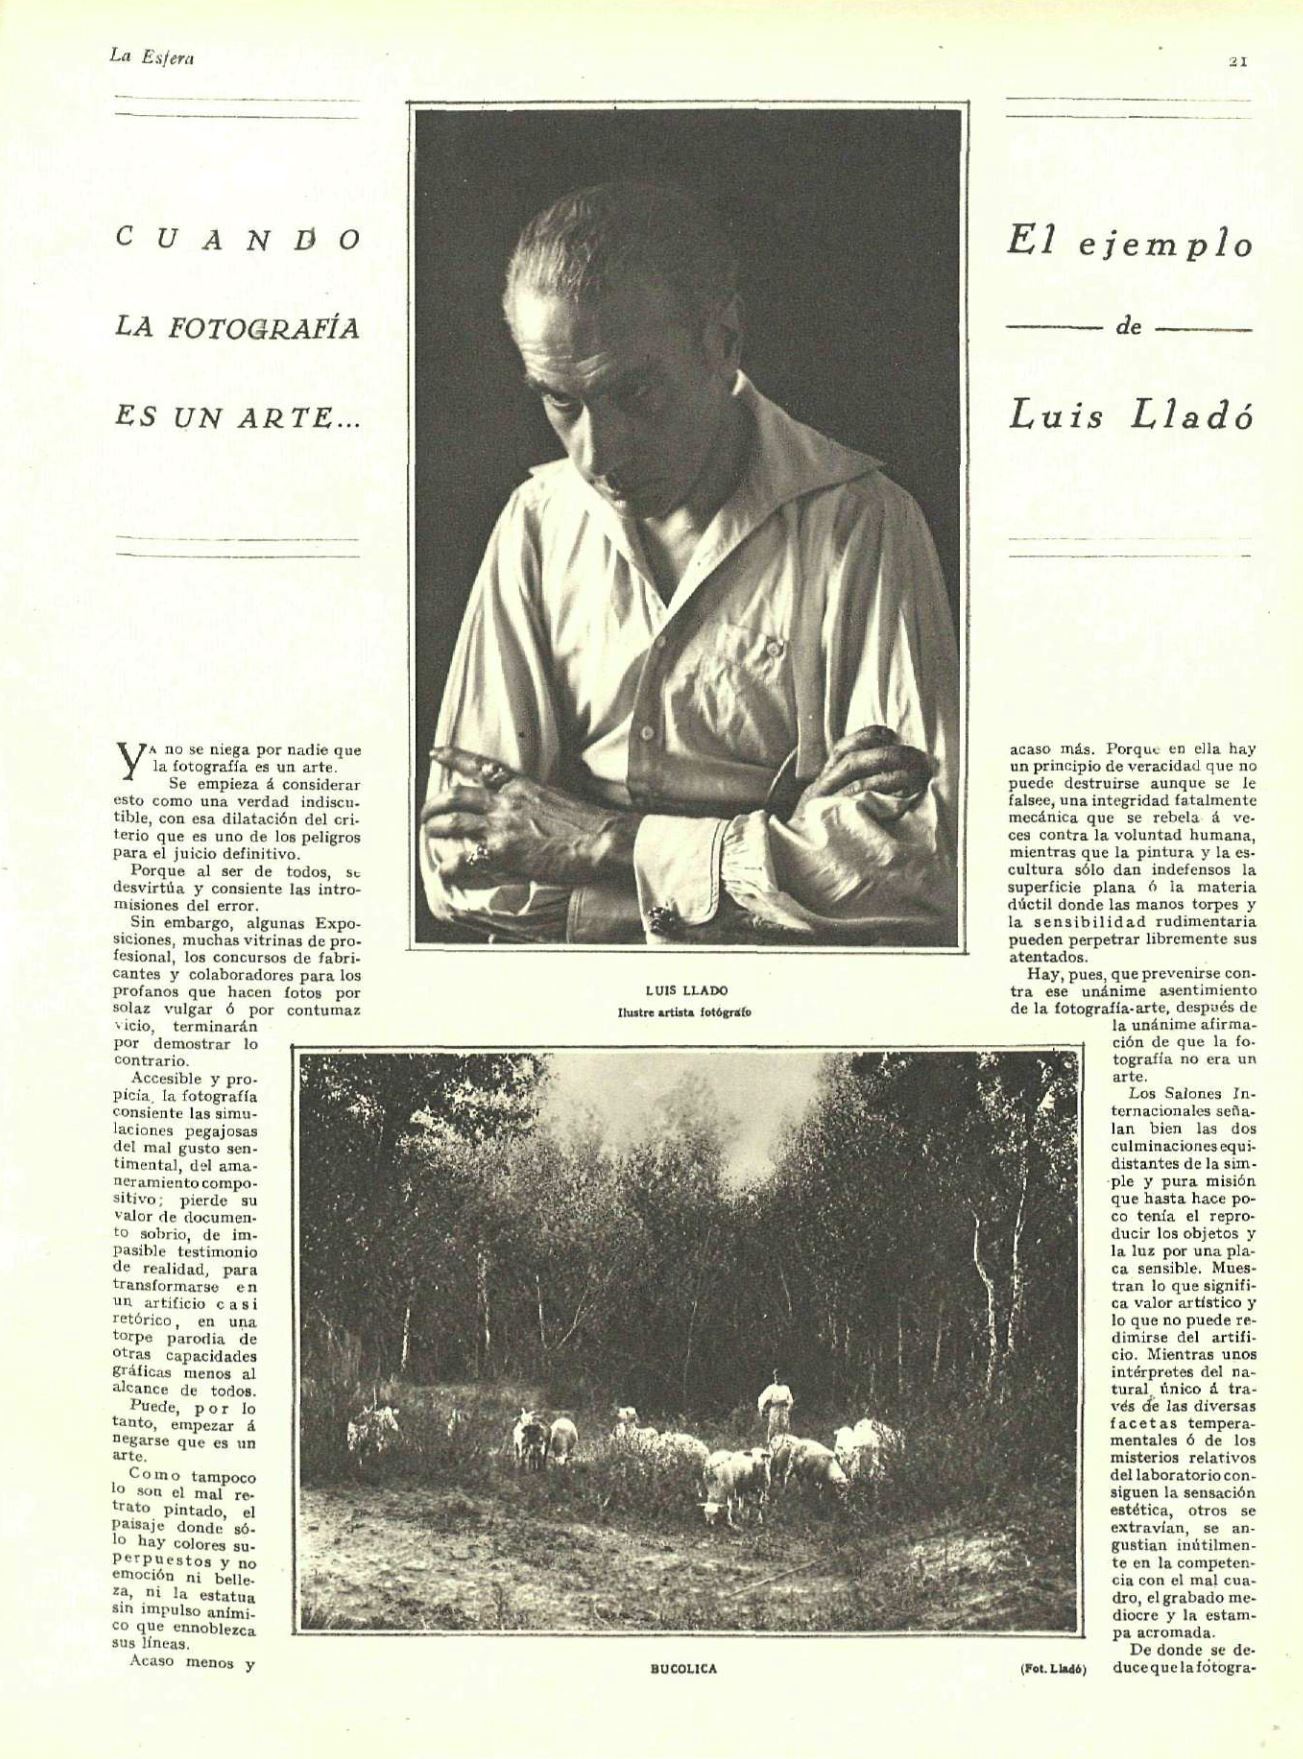 “Cuando la fotografía es un arte: Luis Lladó”. Revista La Esfera, 1927